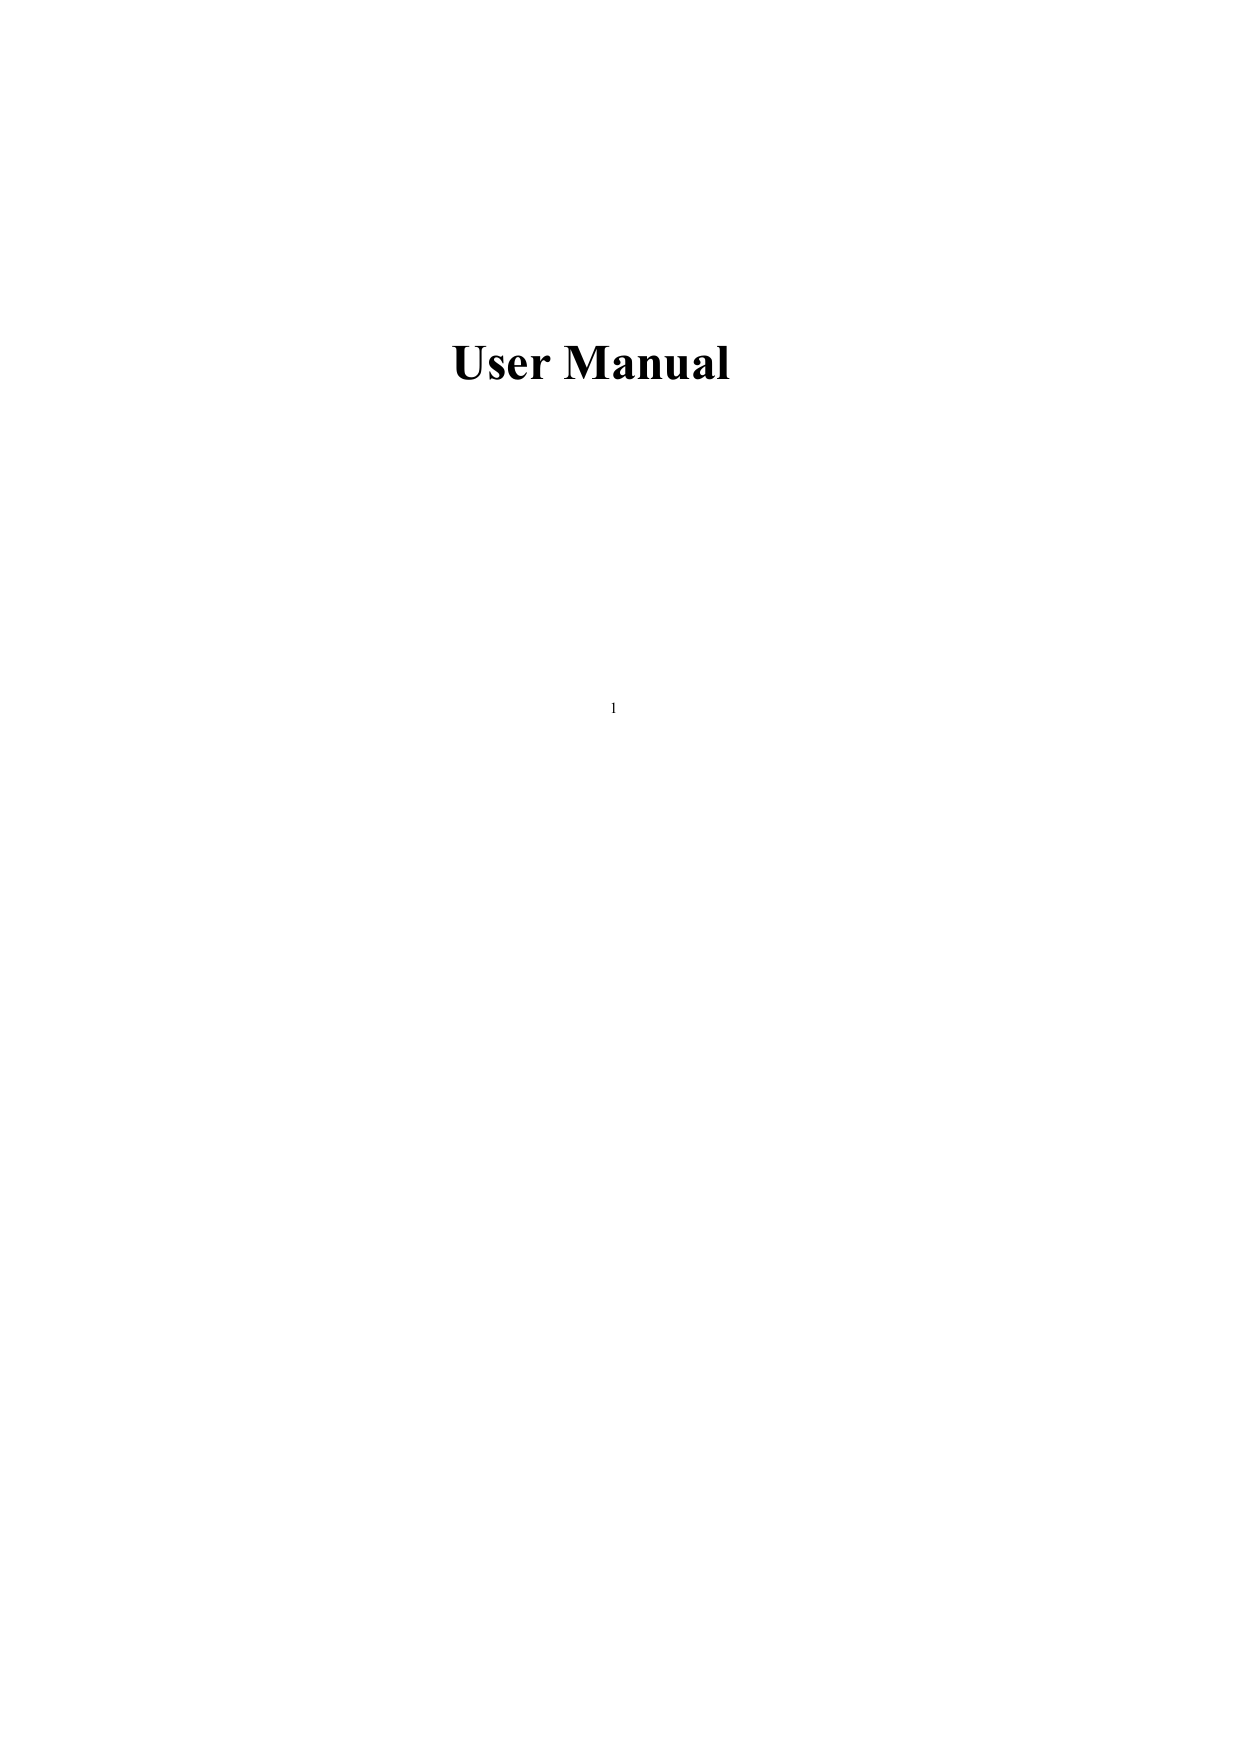   1 User Manual         